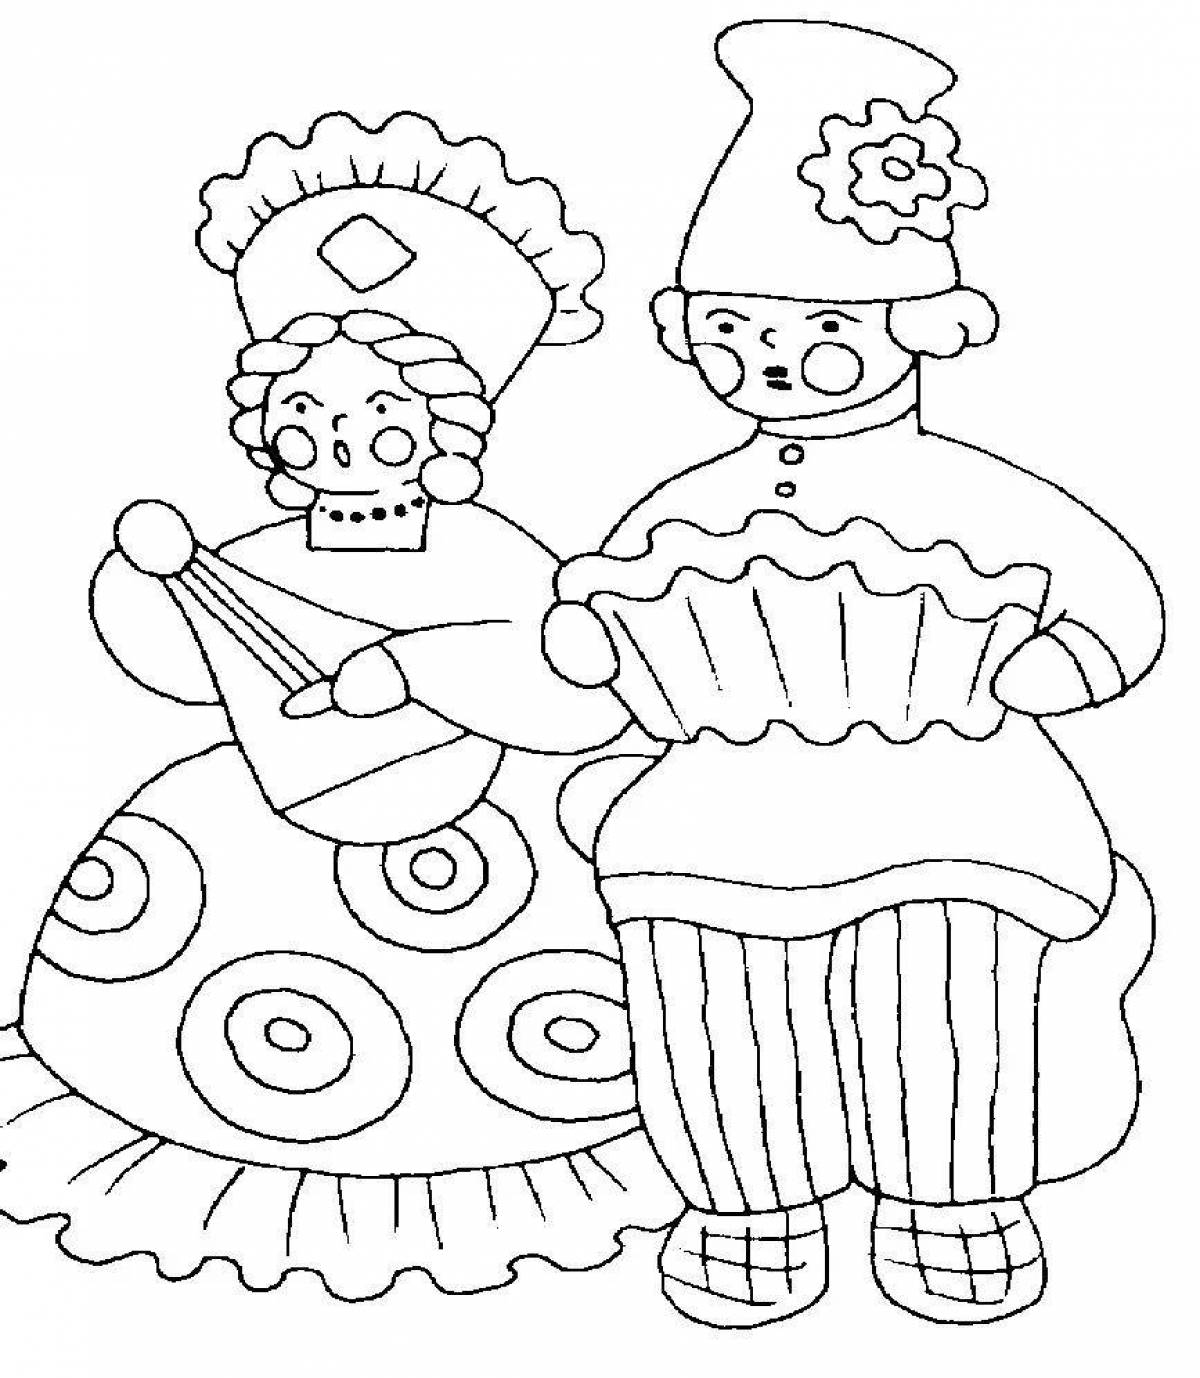 Magic folk art coloring book for kids